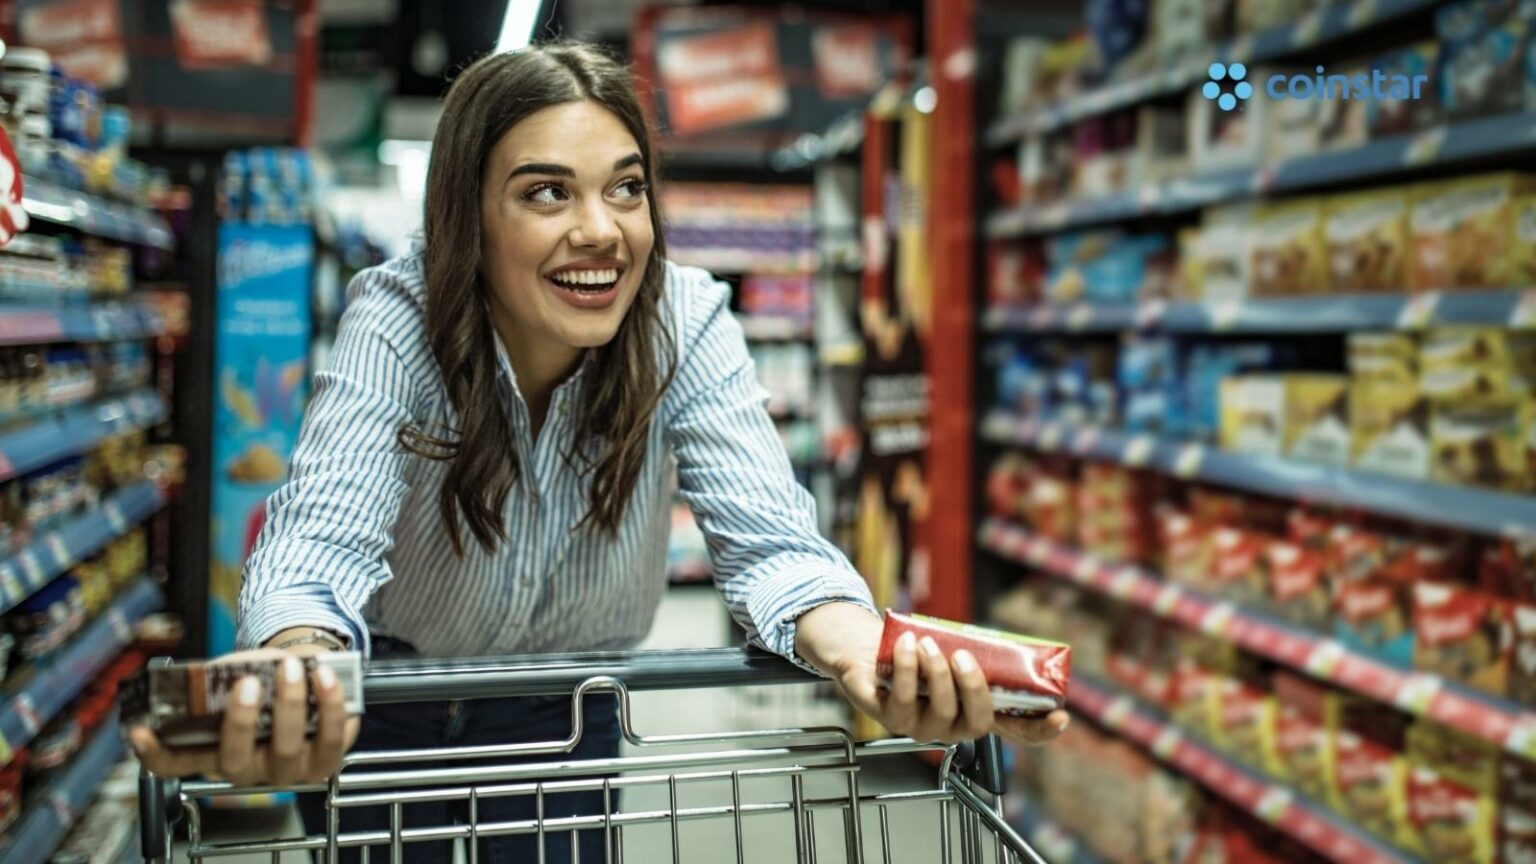 El 100% de consumidores entre 18 y 24 años prefiere comprar comida en tiendas físicas